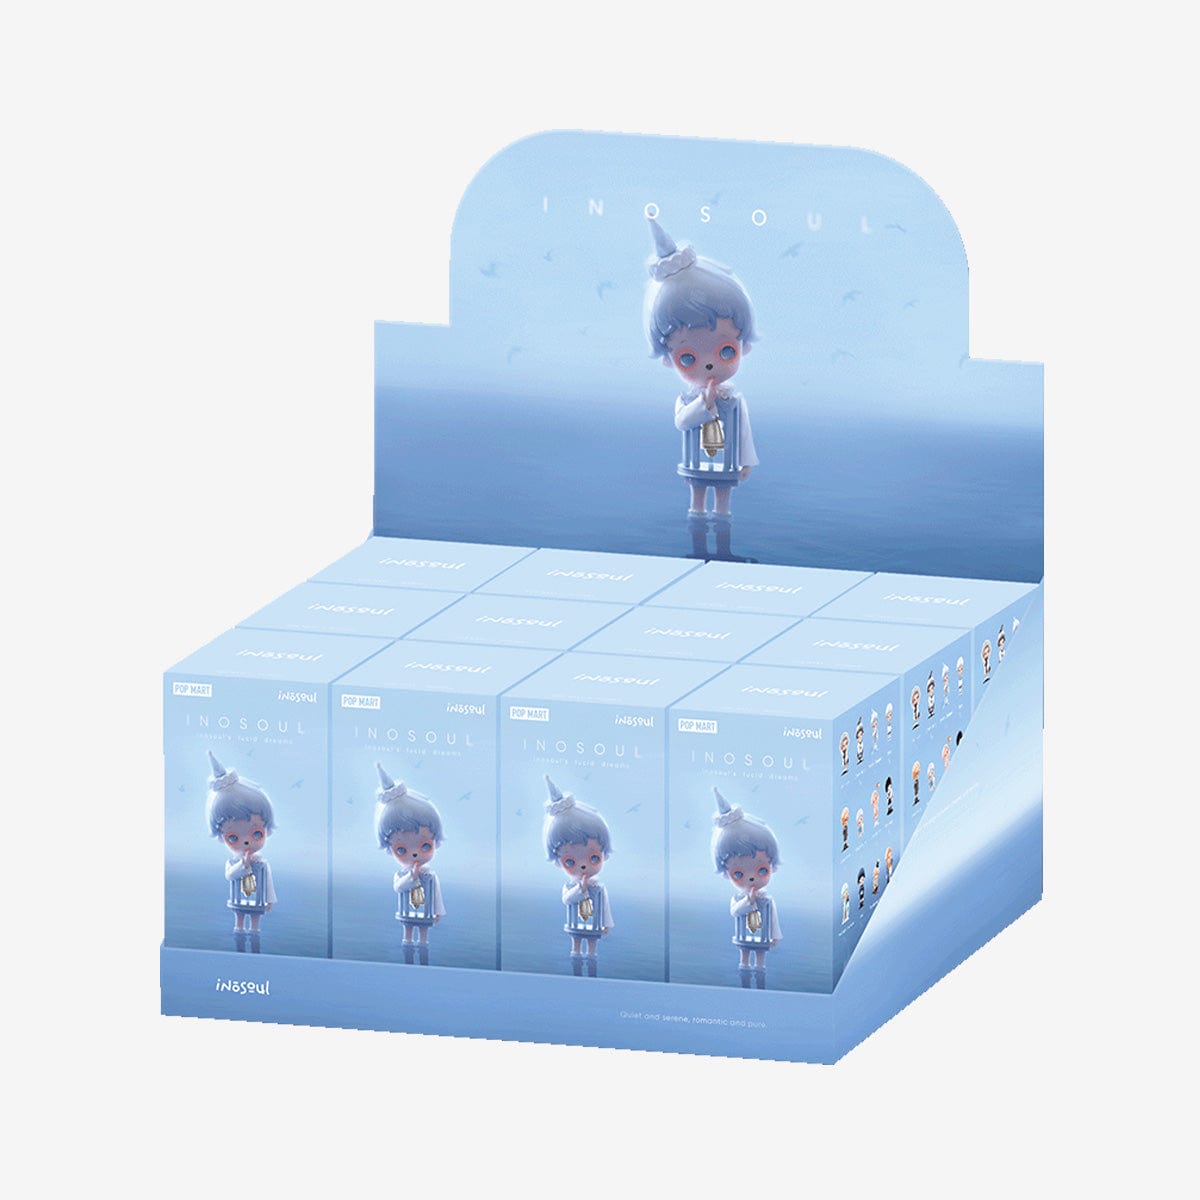 【Sale】inosoul's Lucid Dreams Series Blind Box